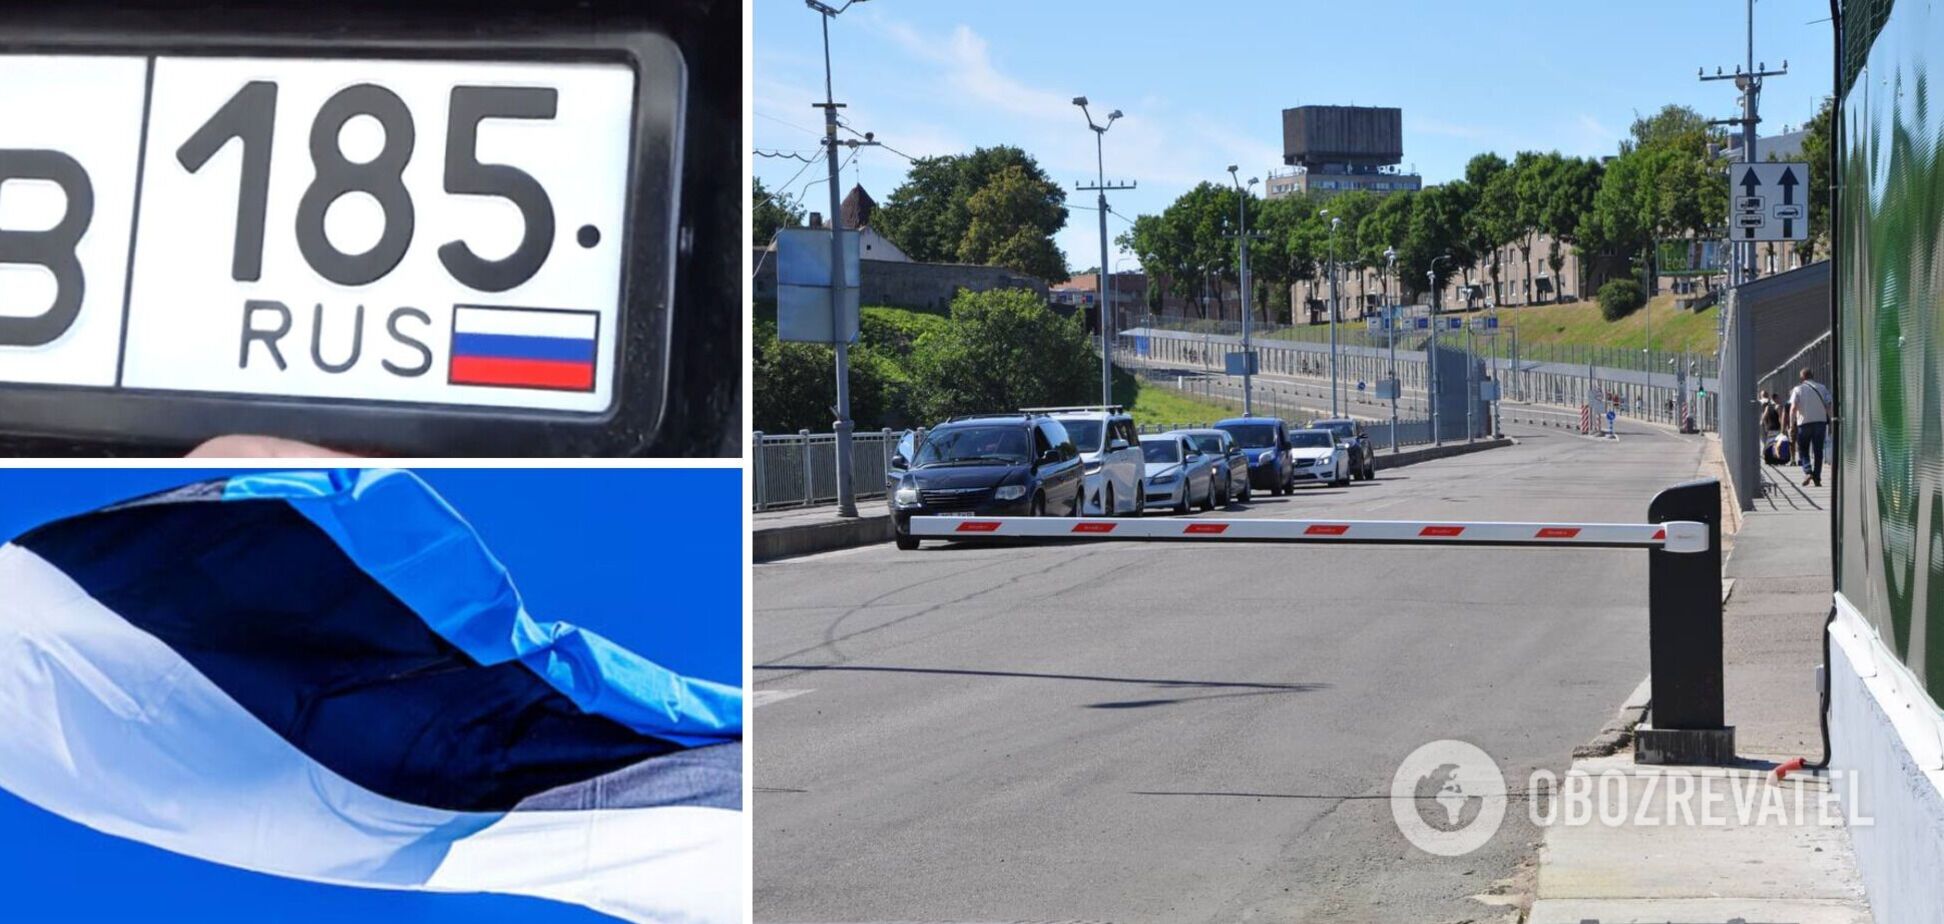 Эстония запретила въезд машин с регистрацией из РФ